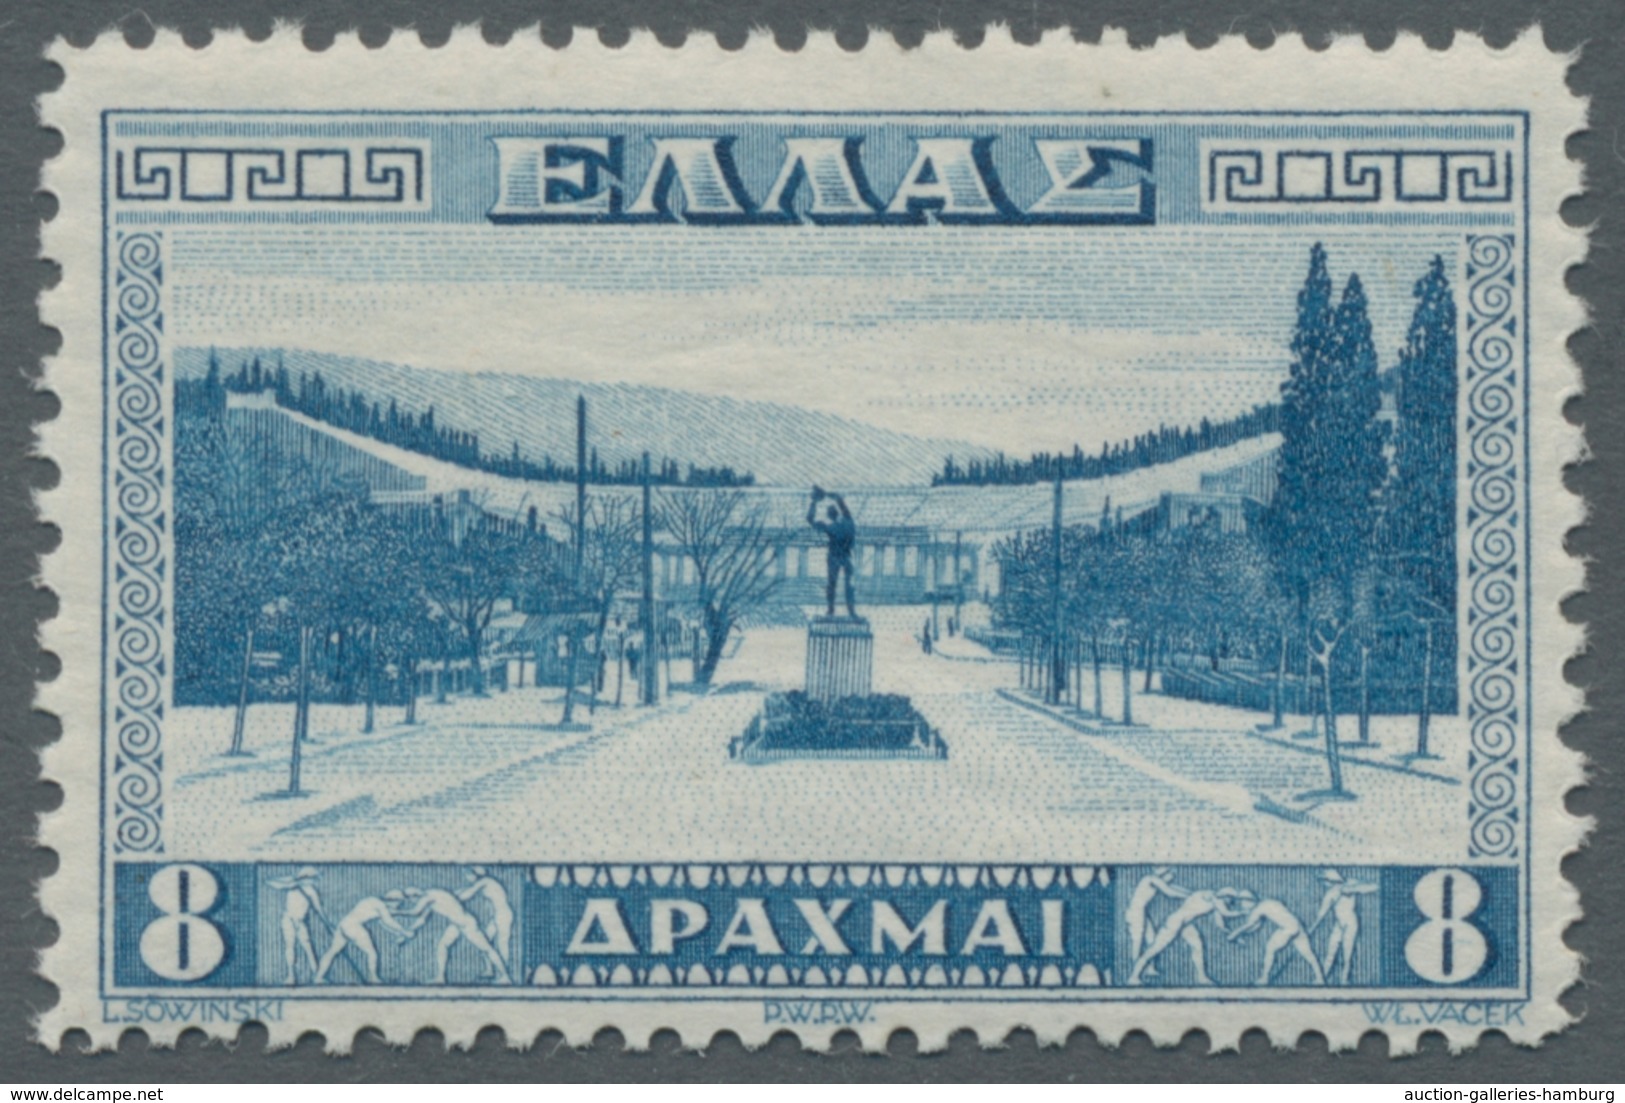 Griechenland: 1861-1979, bessere Sammlung mit nur wenigen Fehlstellen welche in unterschiedlichen Er